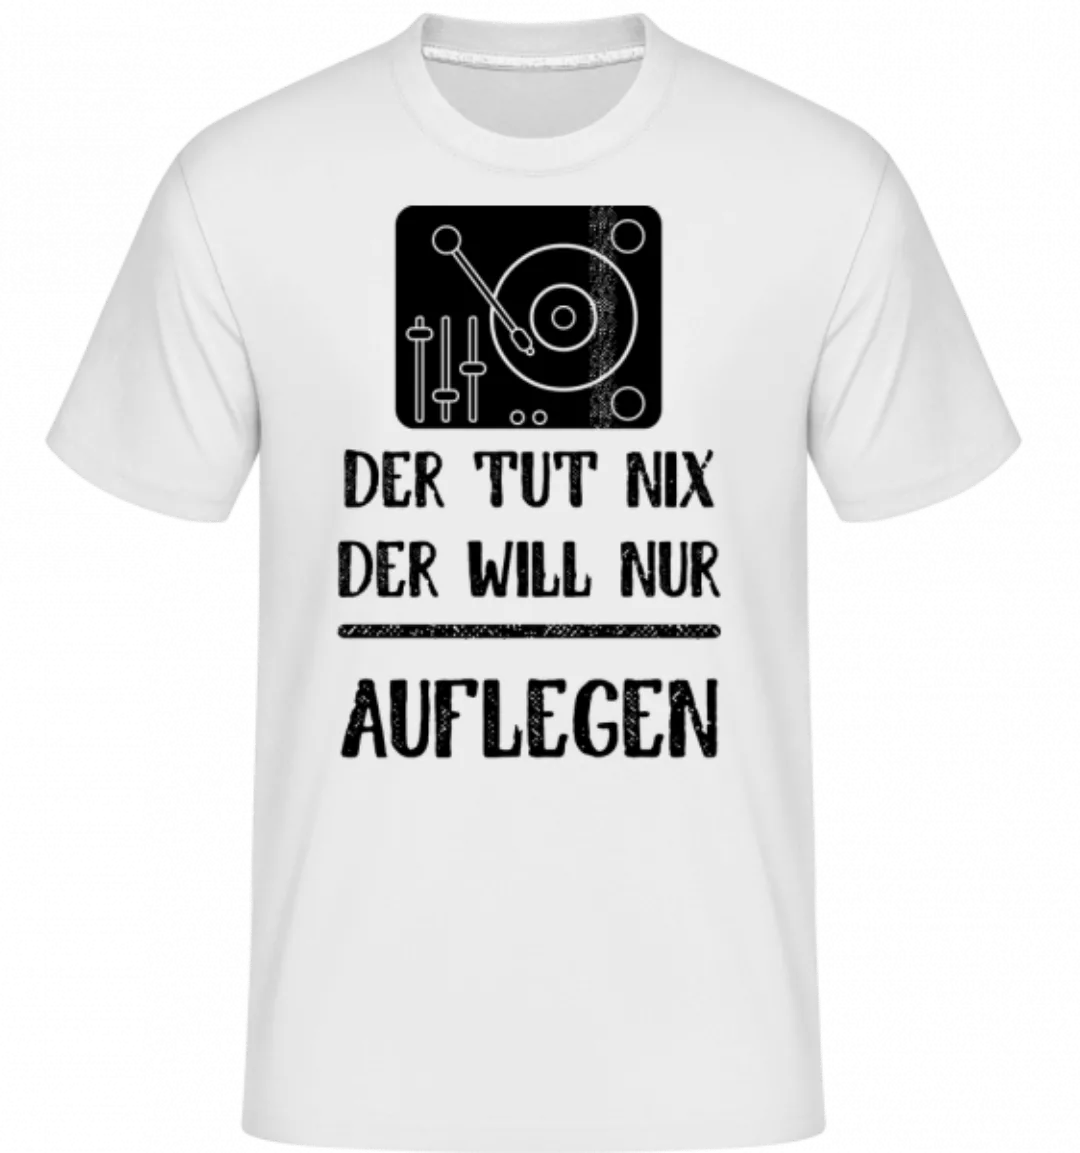 Der Tut Nix nur Auflegen · Shirtinator Männer T-Shirt günstig online kaufen